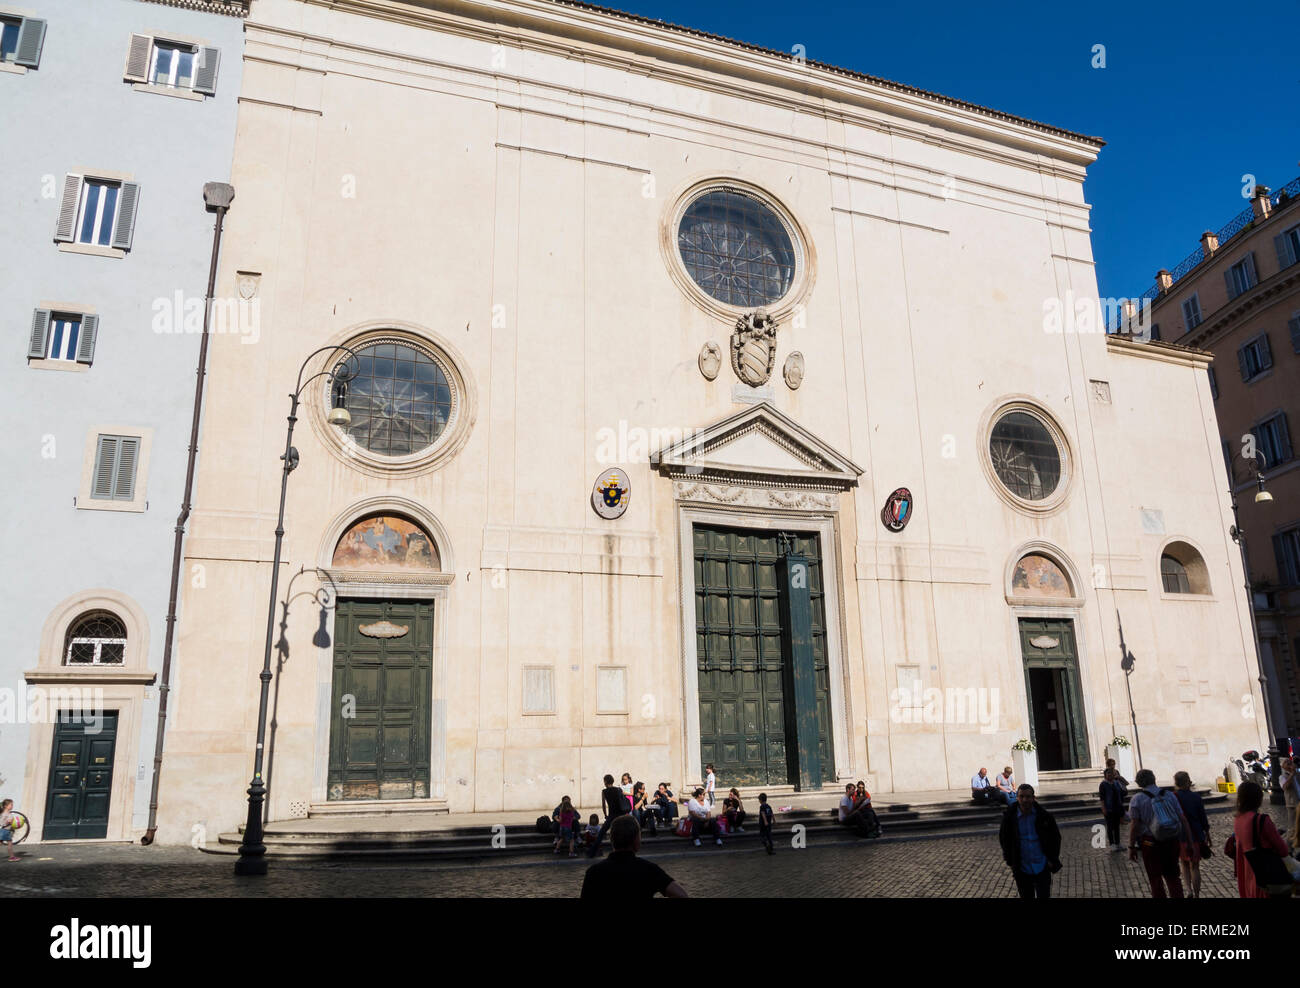 Santa Maria sopra Minerva Rome Italy Stock Photo